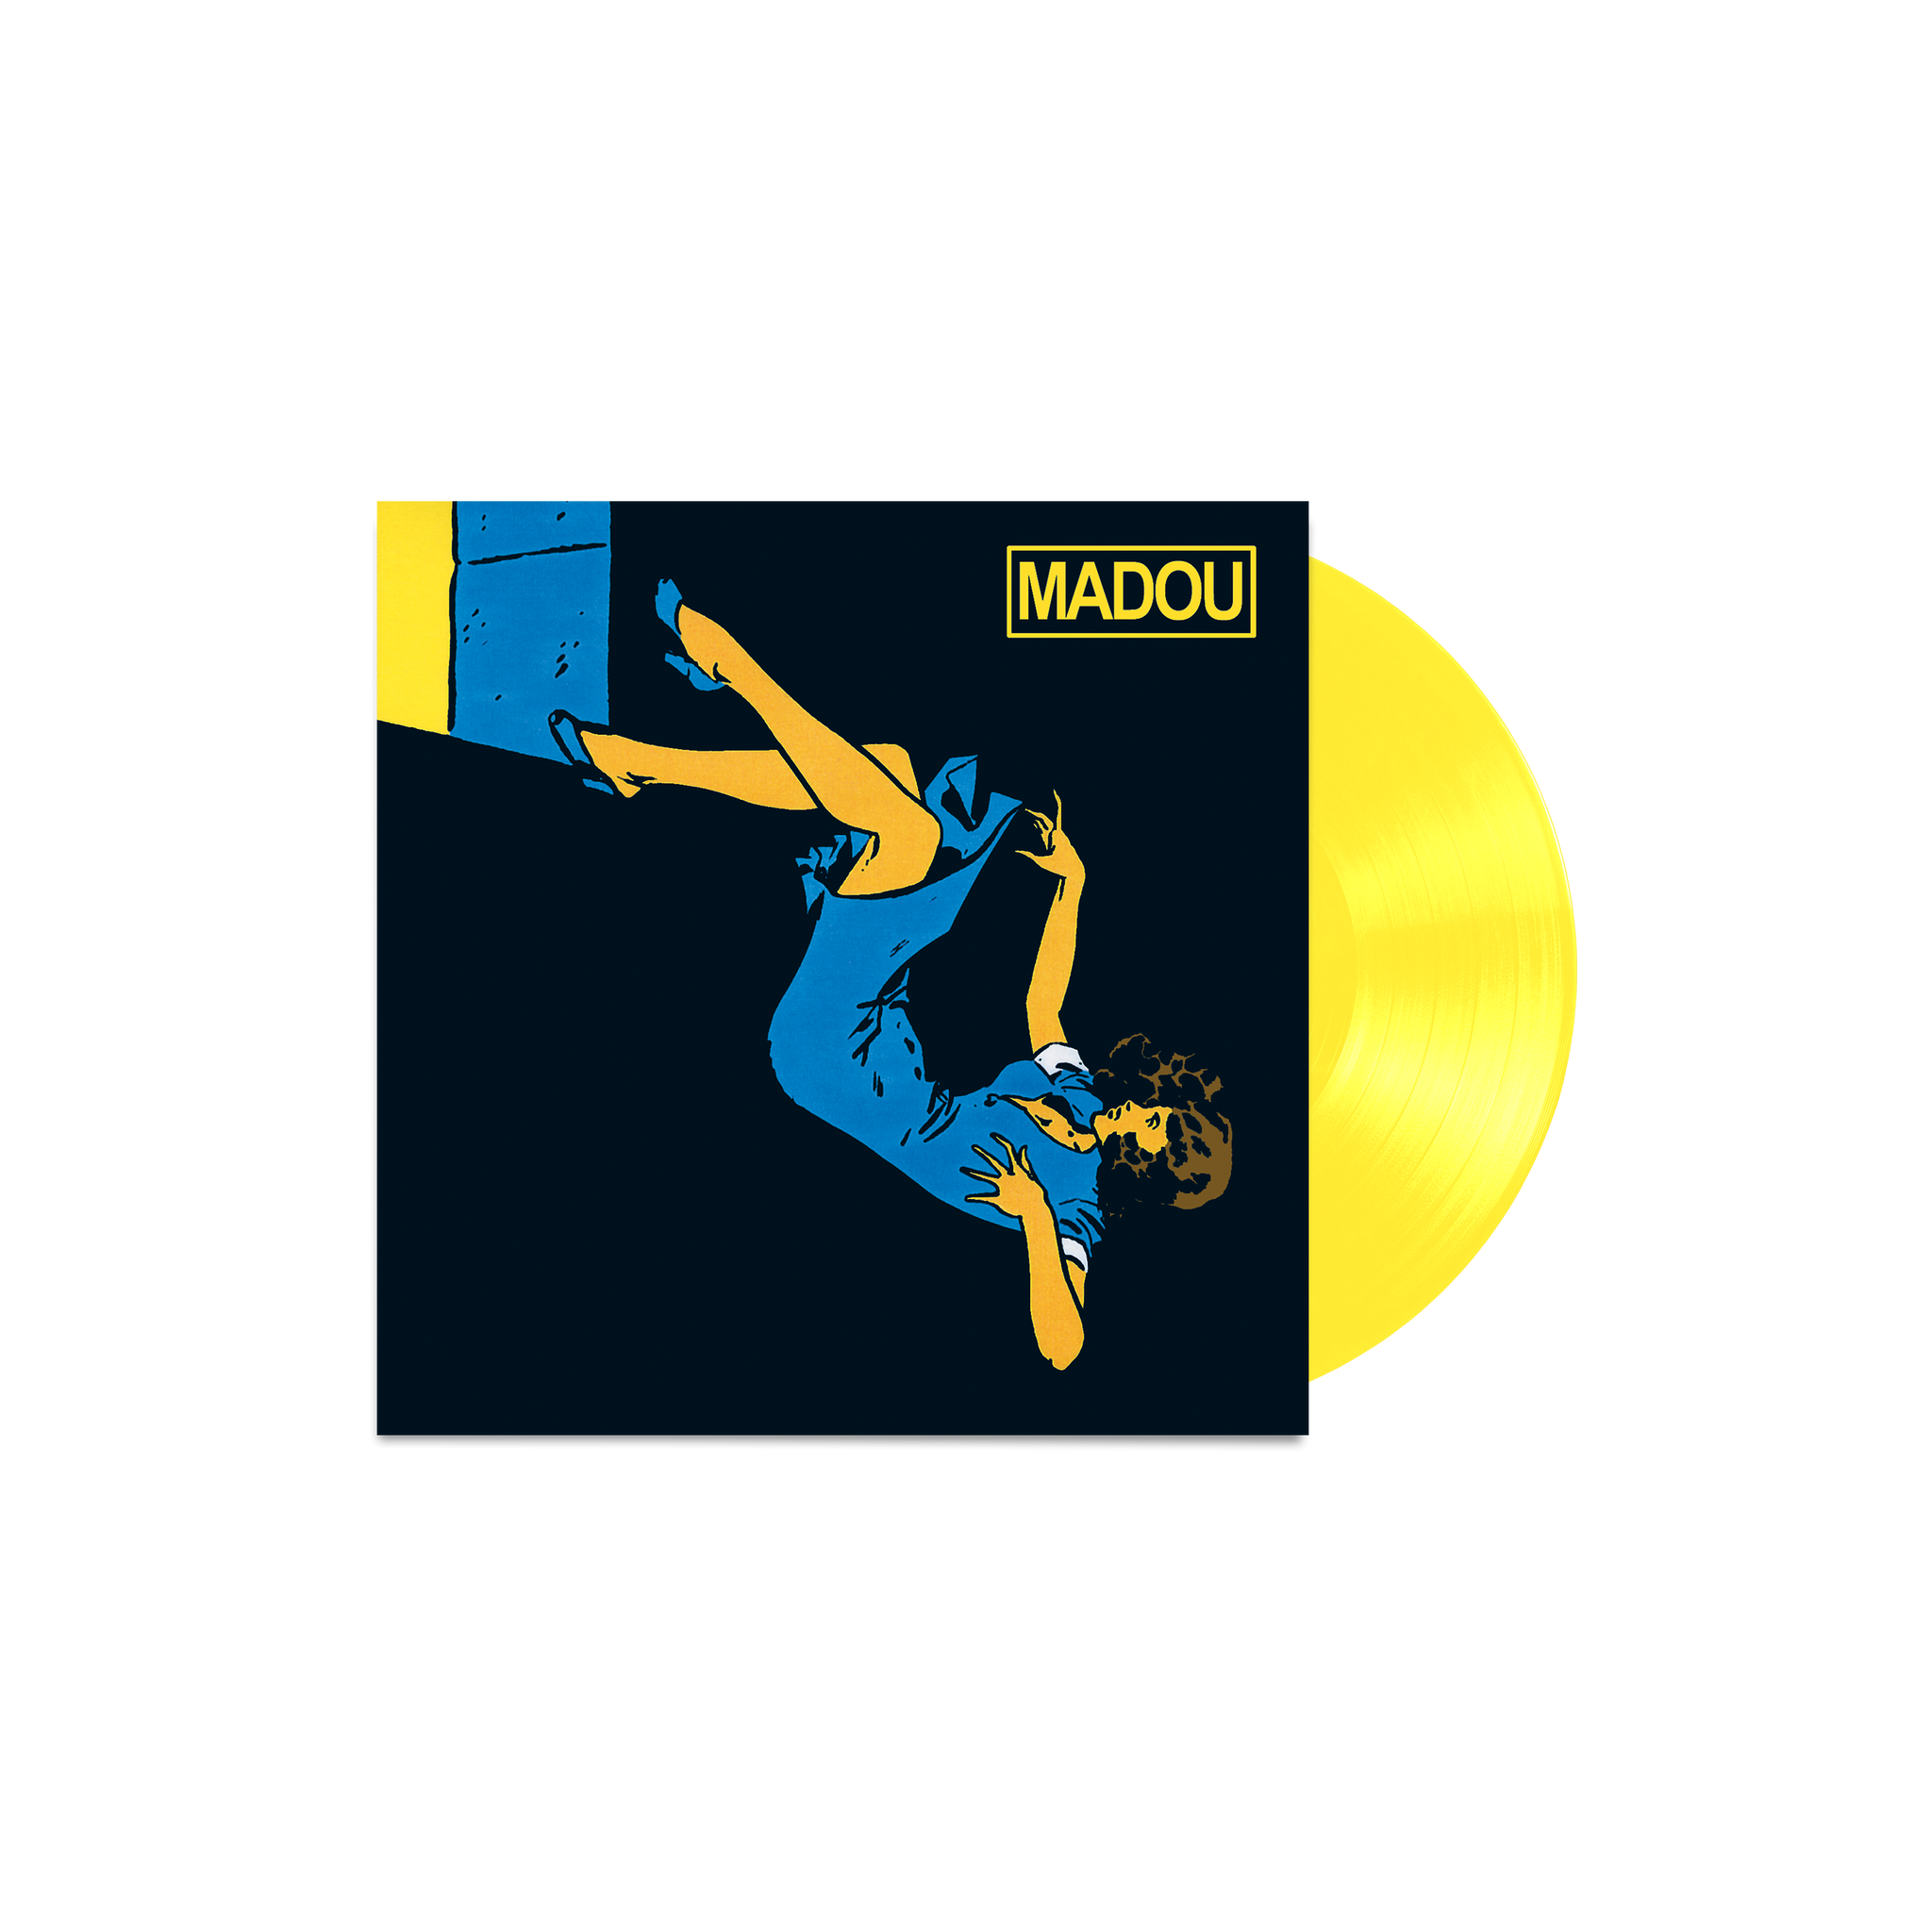 Madou - LP Lt. Edition - 300 exemplaren - Geel Vinyl